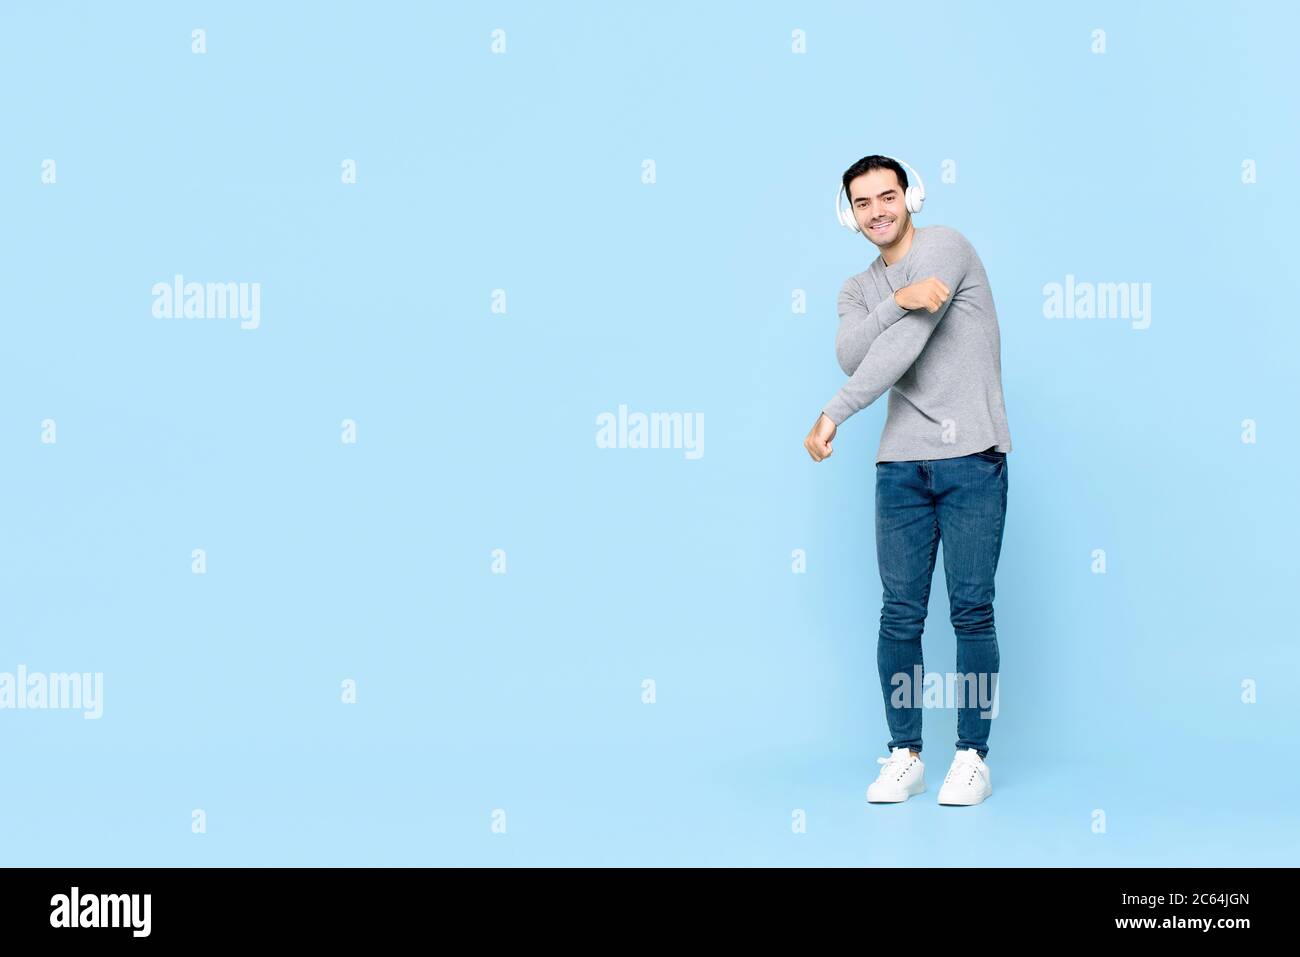 Ritratto a lunghezza intera di un giovane e sorridente bel caucasico che indossa le cuffie ascoltando musica mentre balla in uno sfondo blu isolato studio Foto Stock